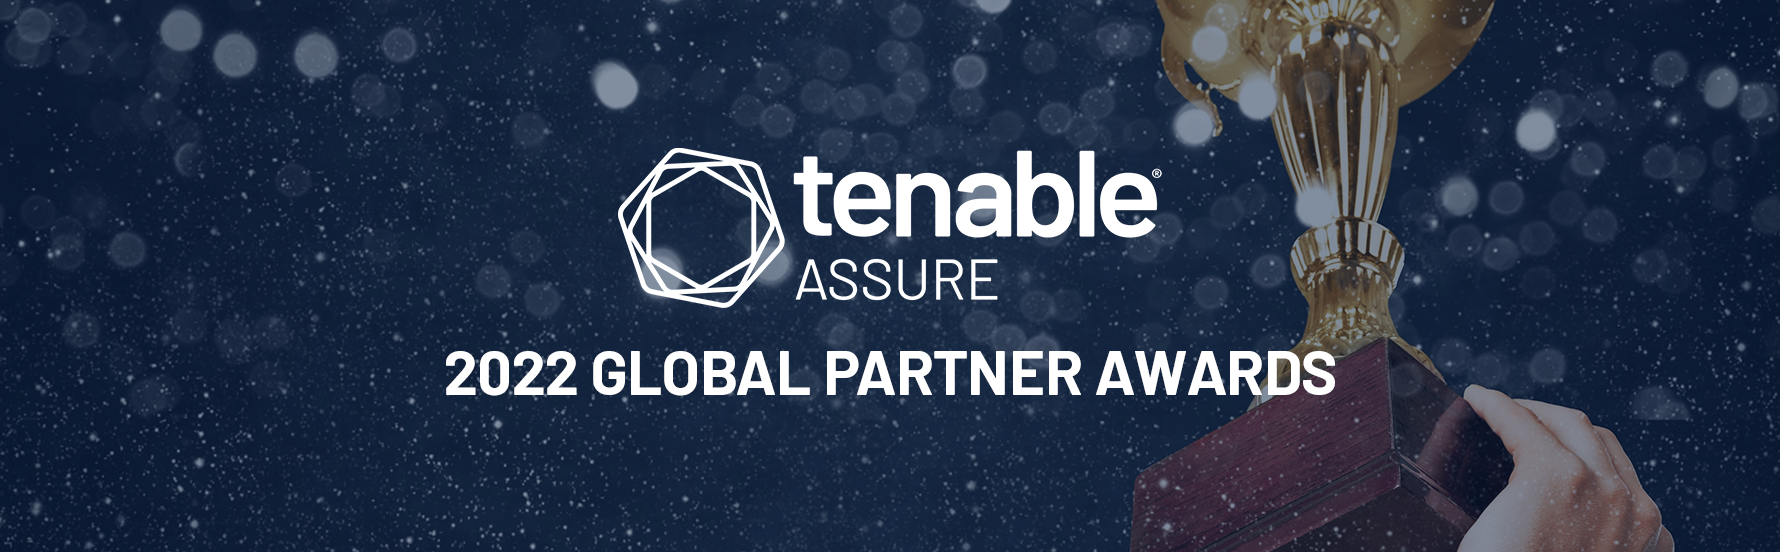 Tenable 2022 Partner Awards Blog Header